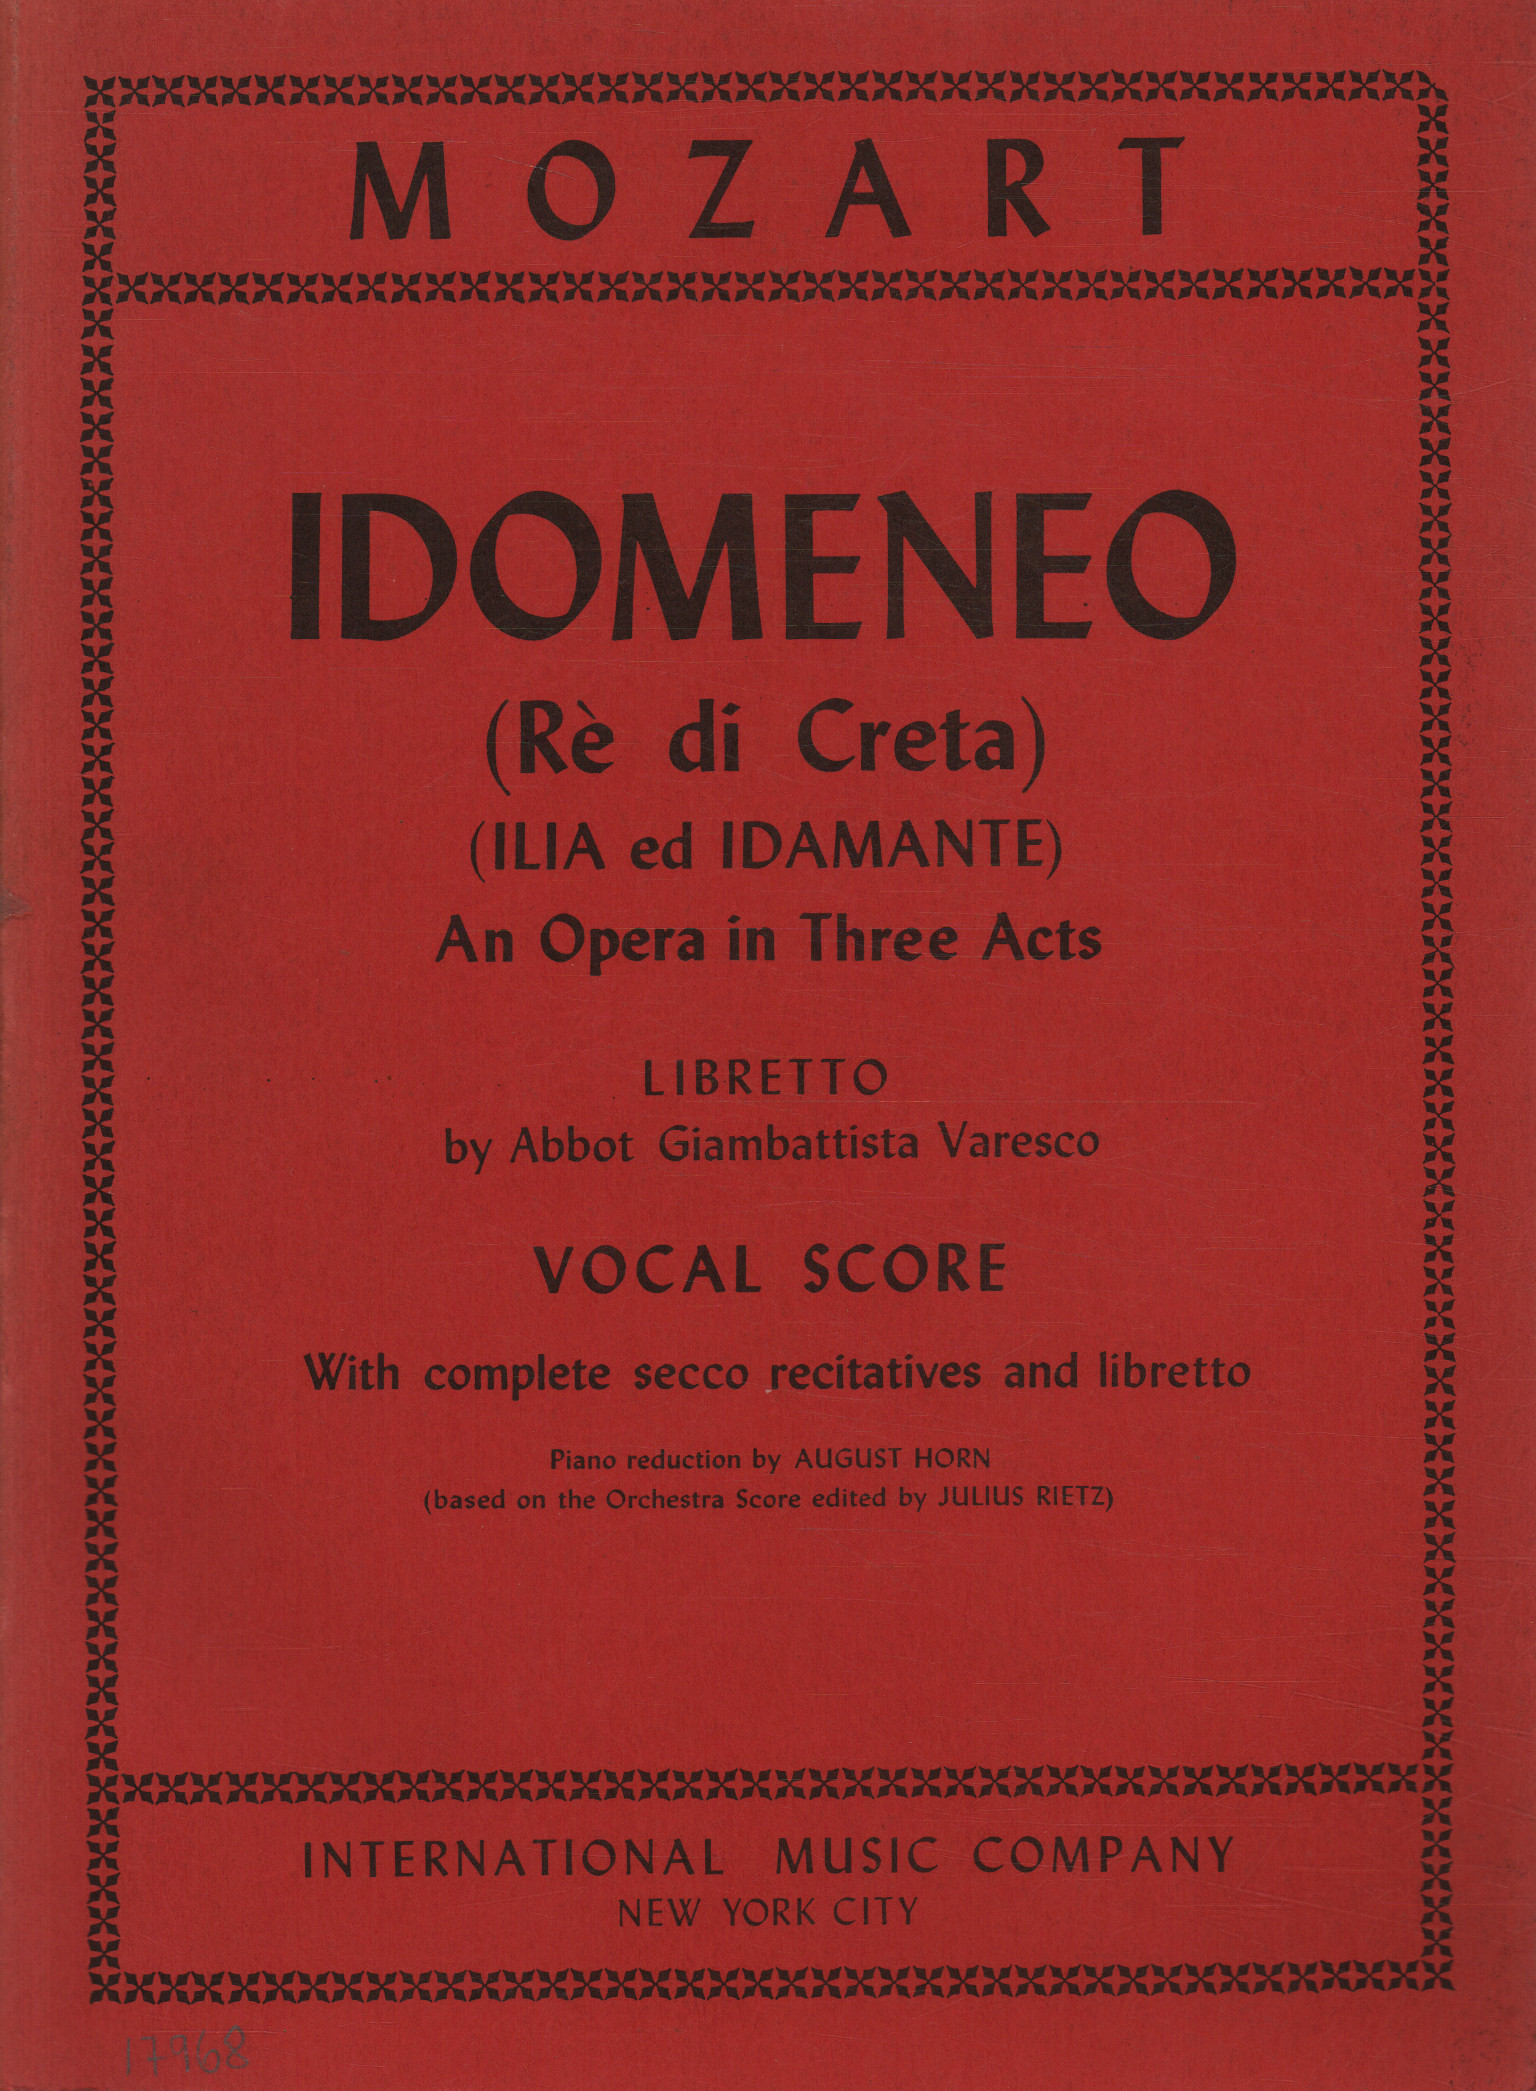 Idomeneo (König von Kreta) (Ilia und I